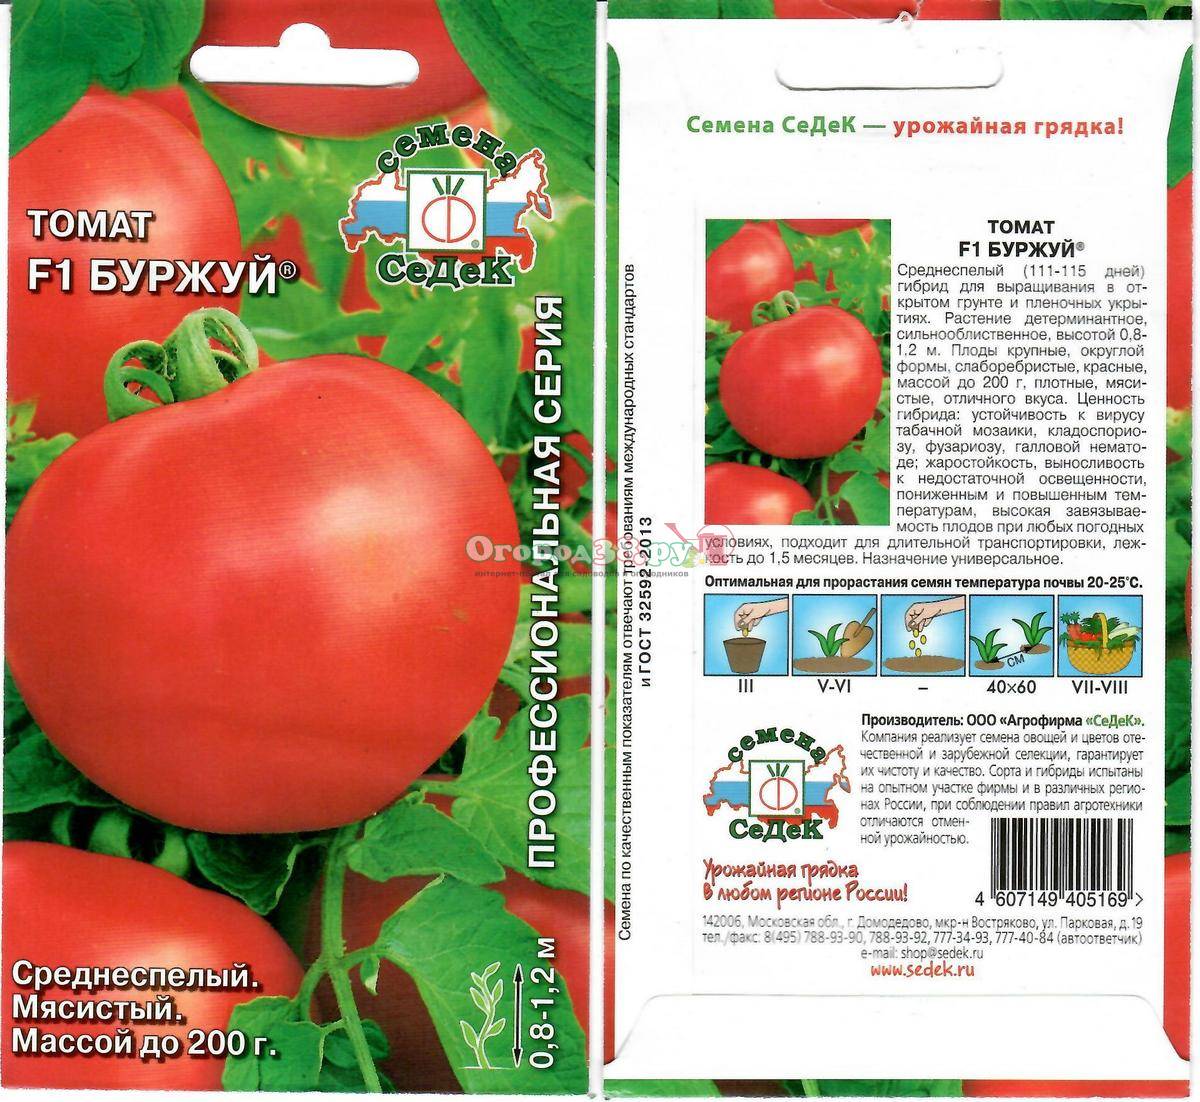 Описание томата Буржуй: особенности выращивания, урожайность